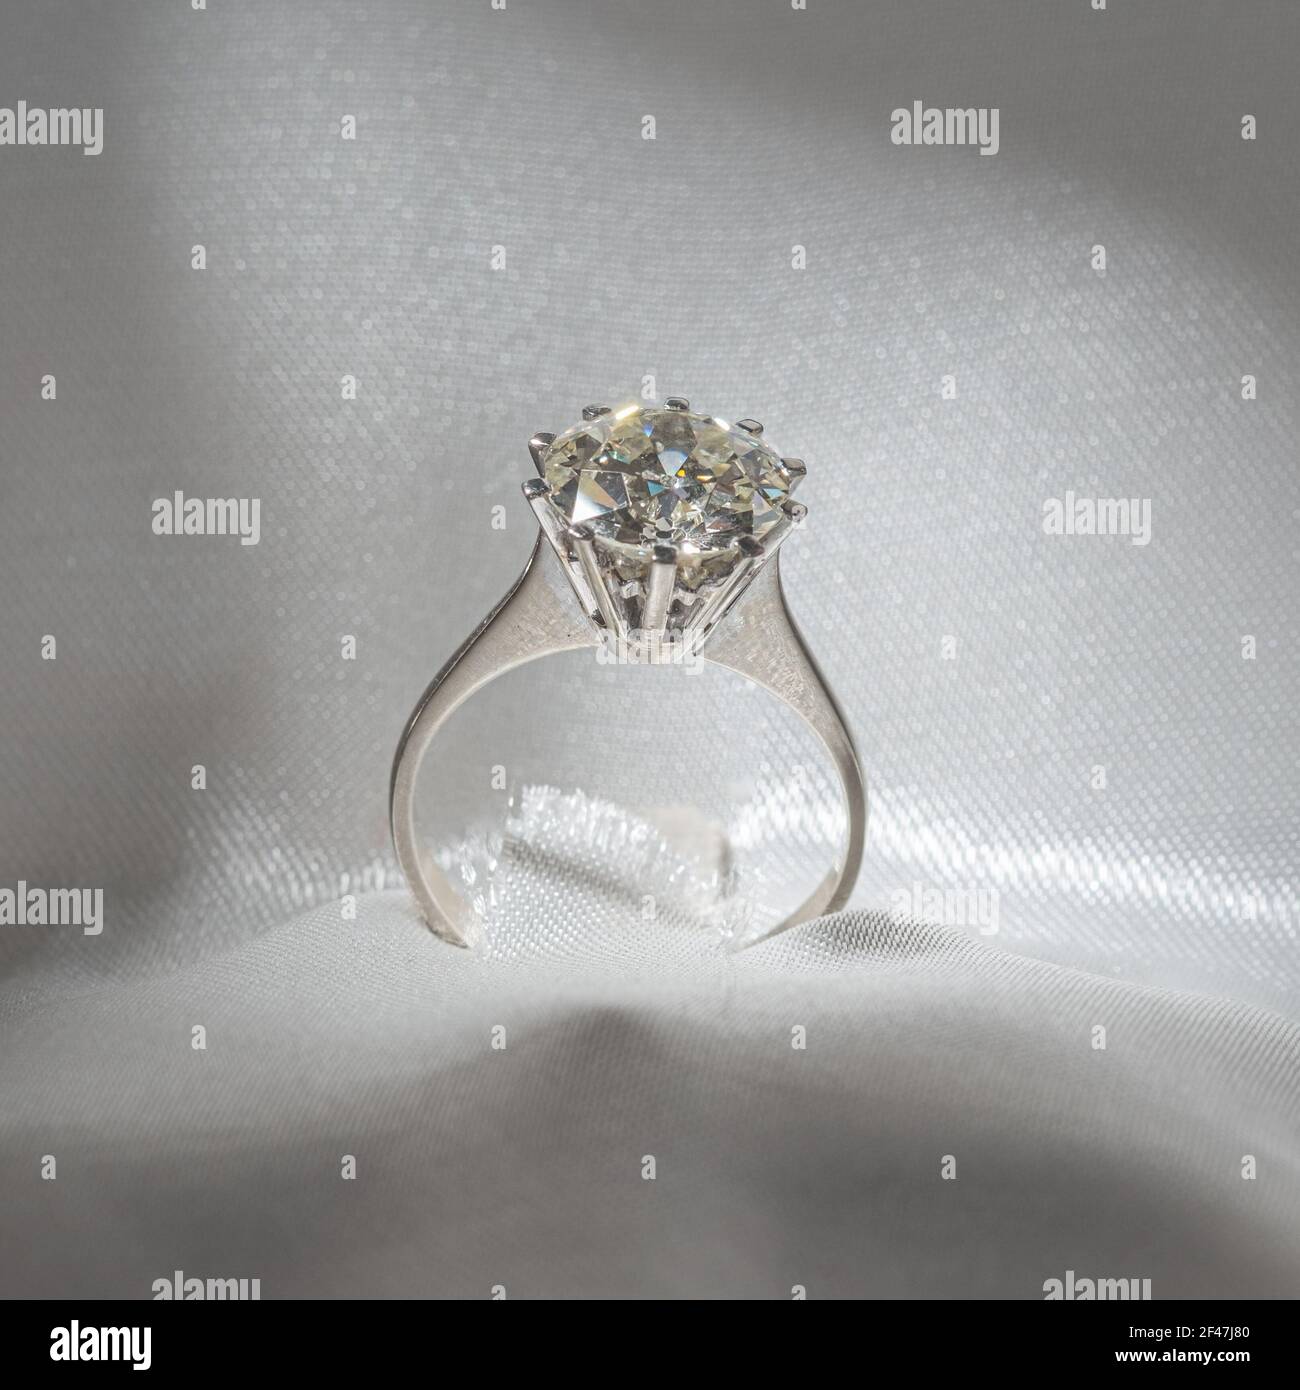 precioso solitair diamante brillante montado en anillo de oro blanco Foto de stock